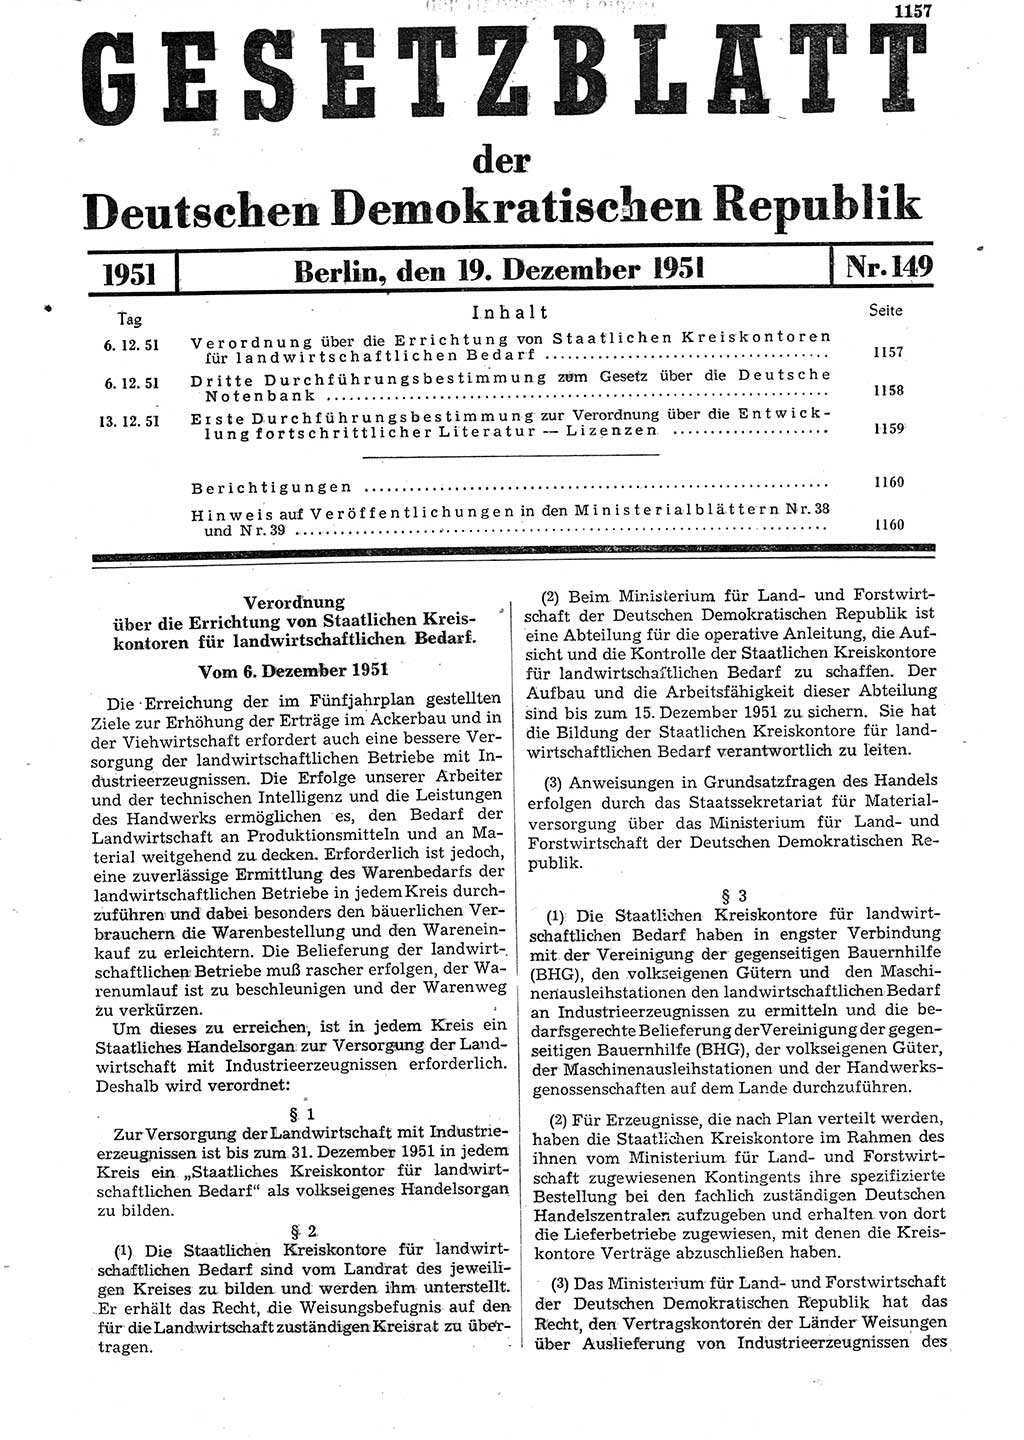 Gesetzblatt (GBl.) der Deutschen Demokratischen Republik (DDR) 1951, Seite 1157 (GBl. DDR 1951, S. 1157)